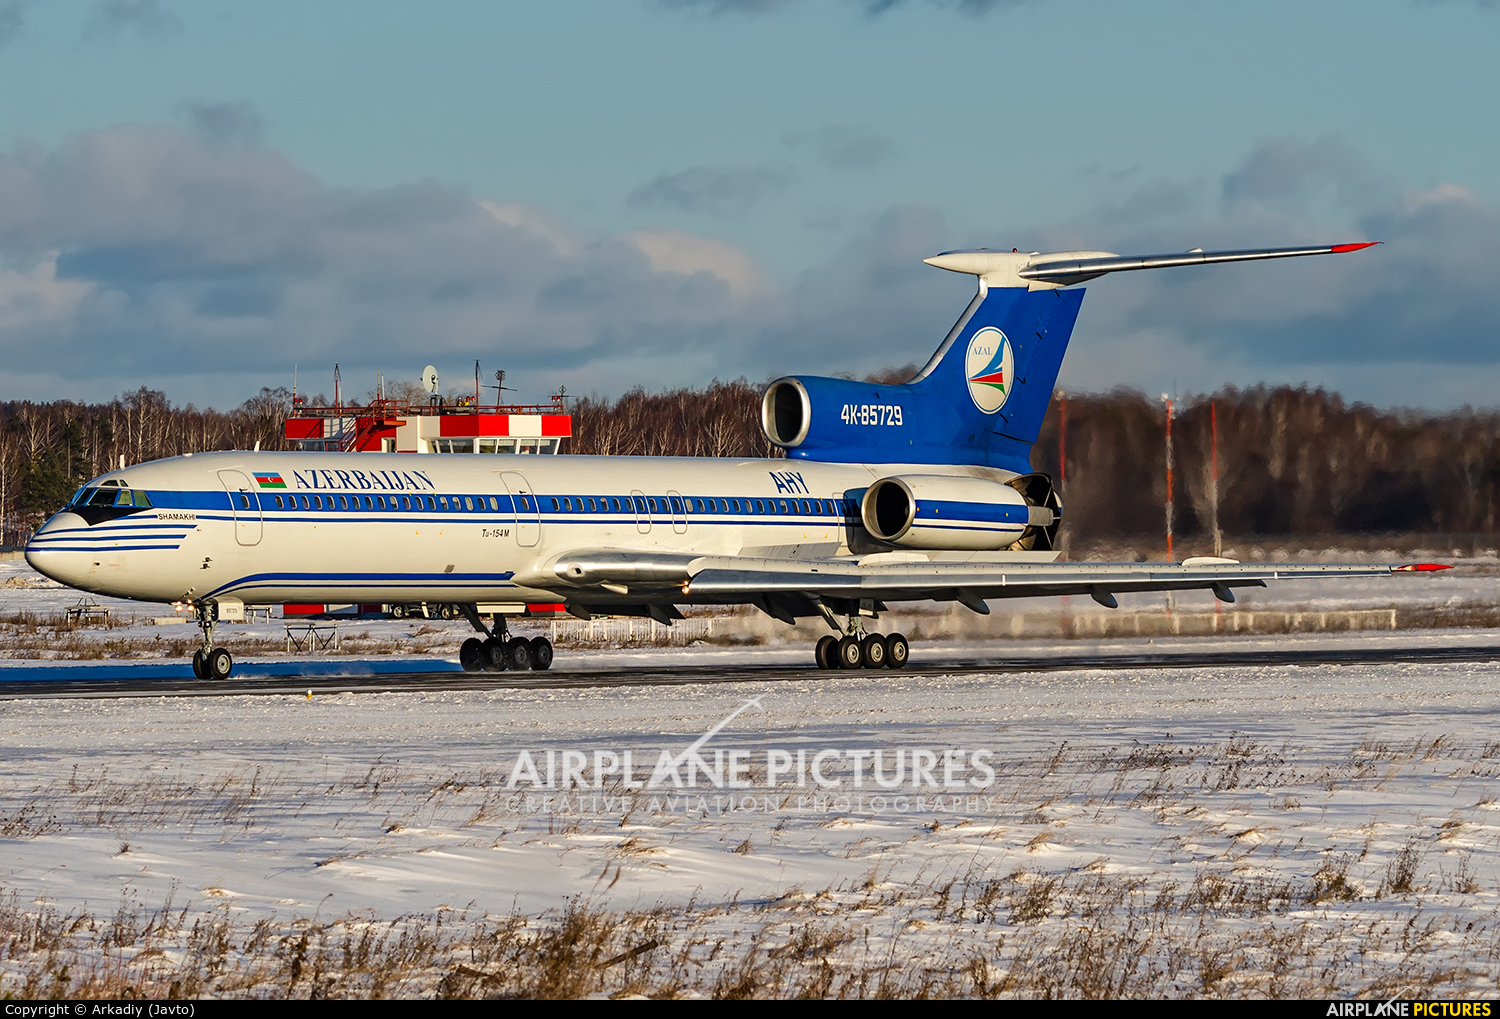 Azerbaijan Airlines 4K-85729 aircraft at Koltsovo - Ekaterinburg